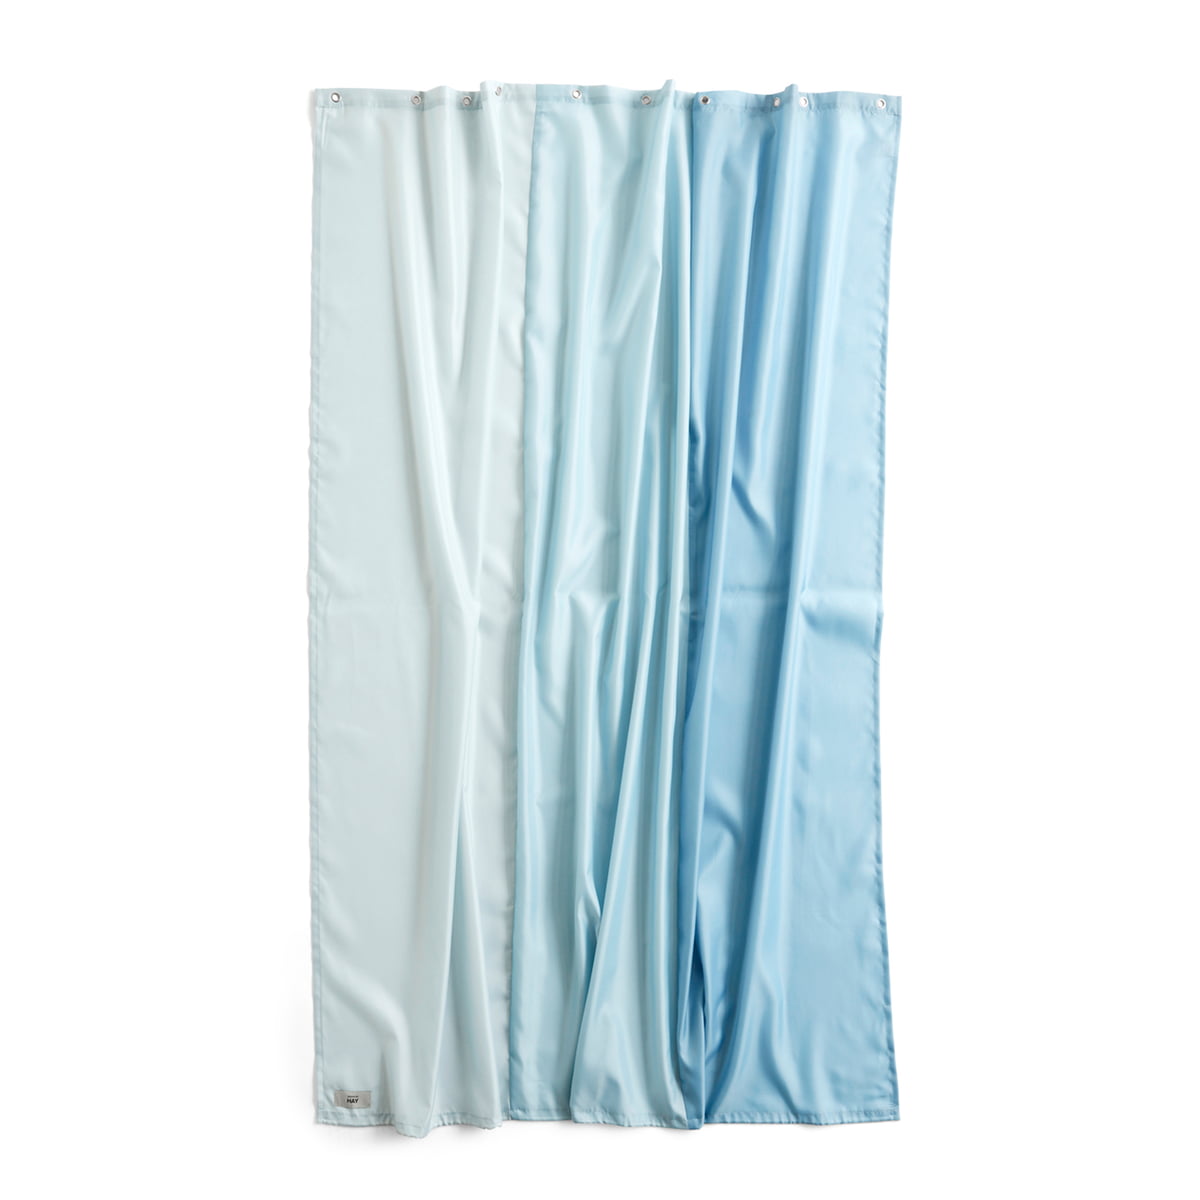 hay - aquarelle rideau de douche, 200 x 180 cm, vertical ice blue